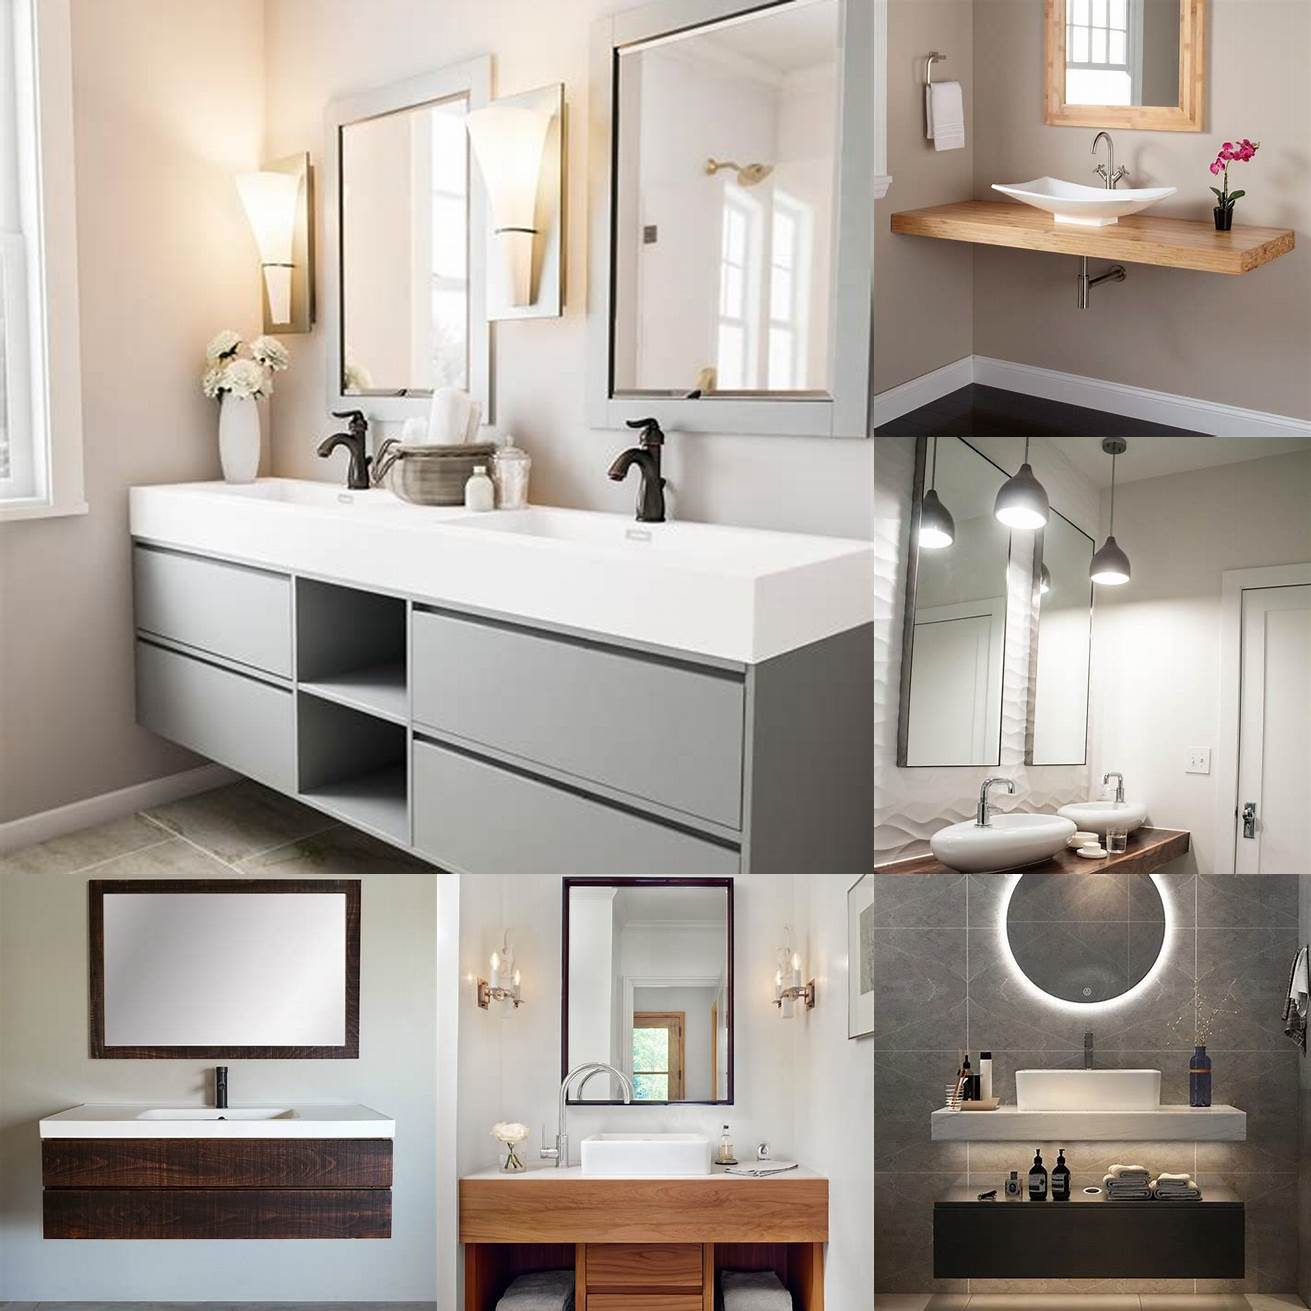 Floating bathroom vanity with minimalist design